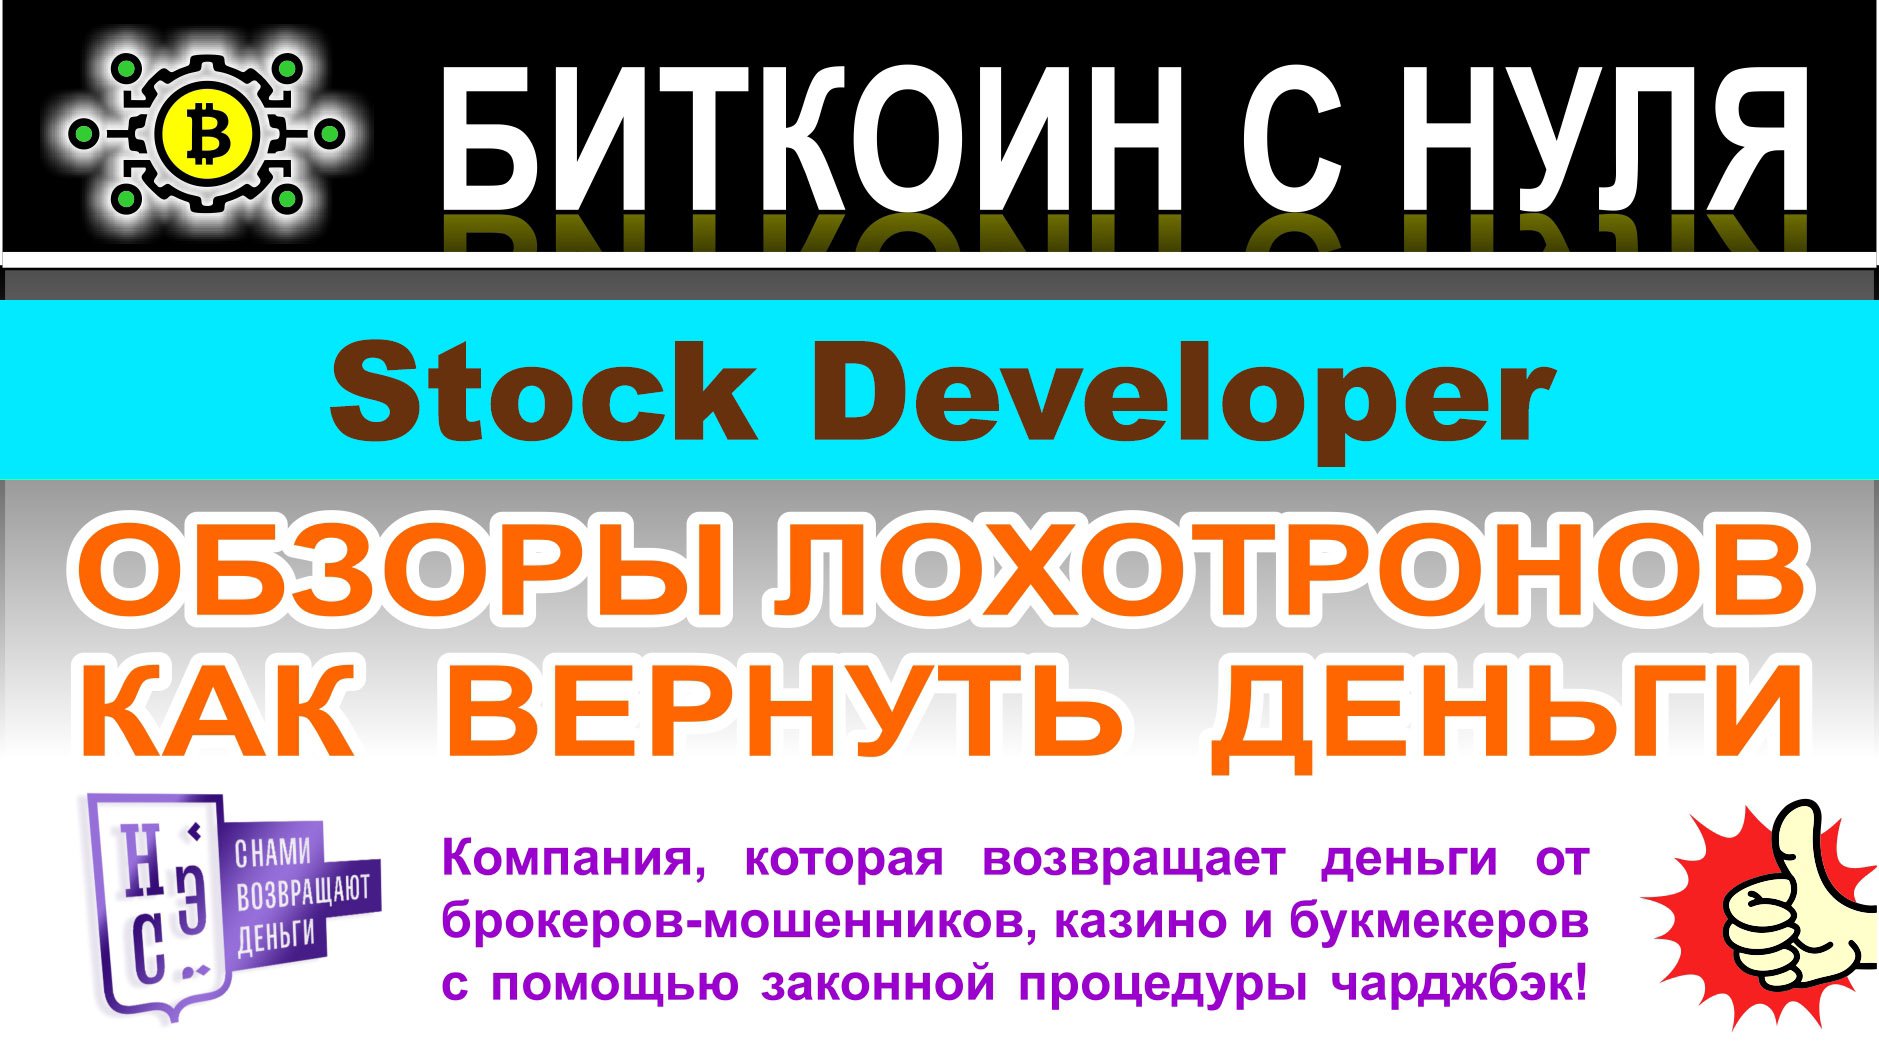 Stock Developer — очевидный мошеннический проект и лохотрон. Не связываться? Отзывы.